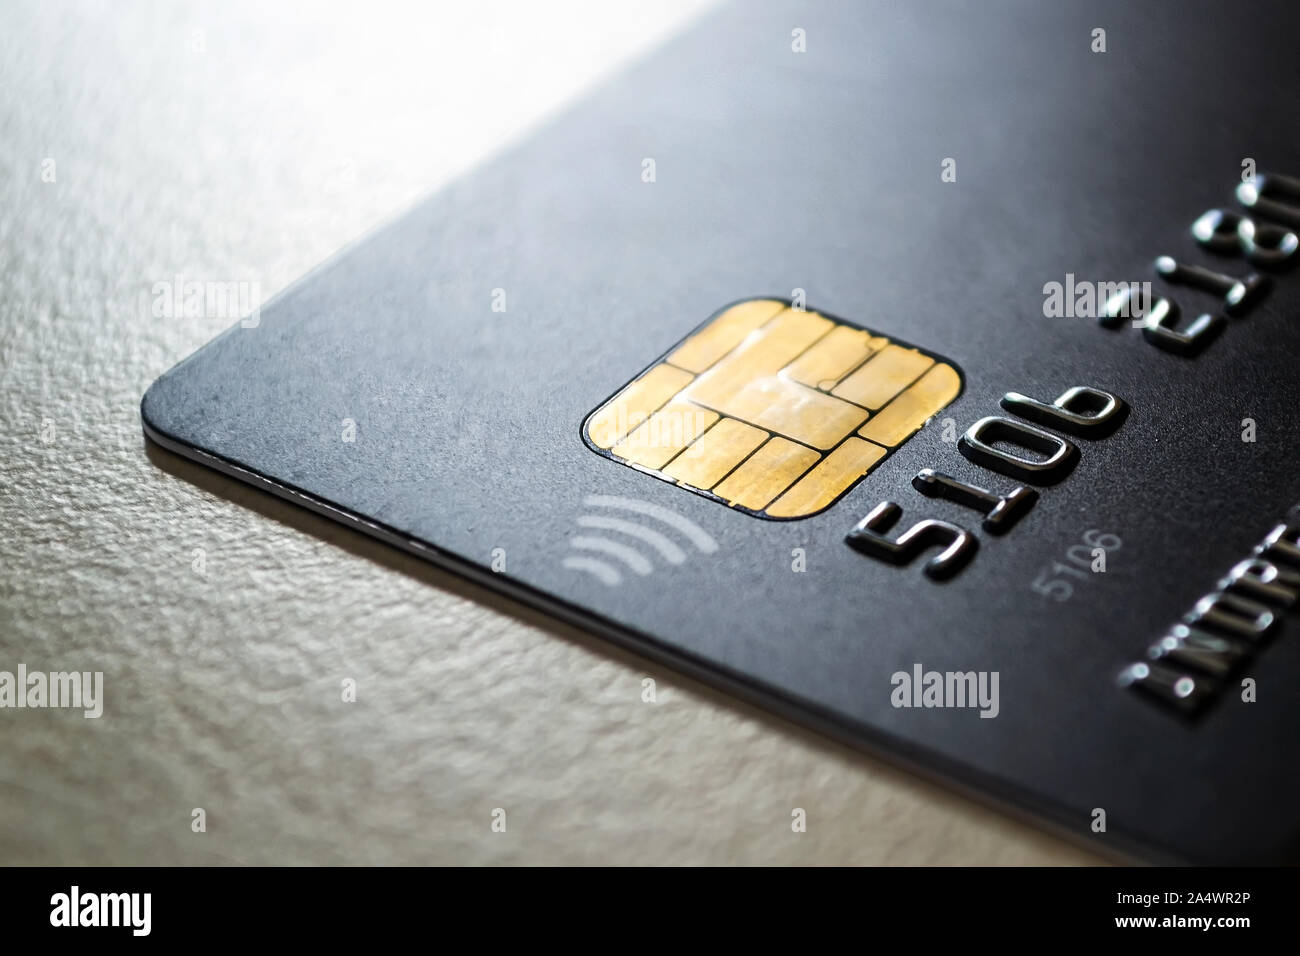 Schwarze Kreditkarte mit Chip und kontaktloses Bezahlen Technologie hautnah. Low Key shot mit alten Kreditkarte. Auf einem Tisch. Stockfoto